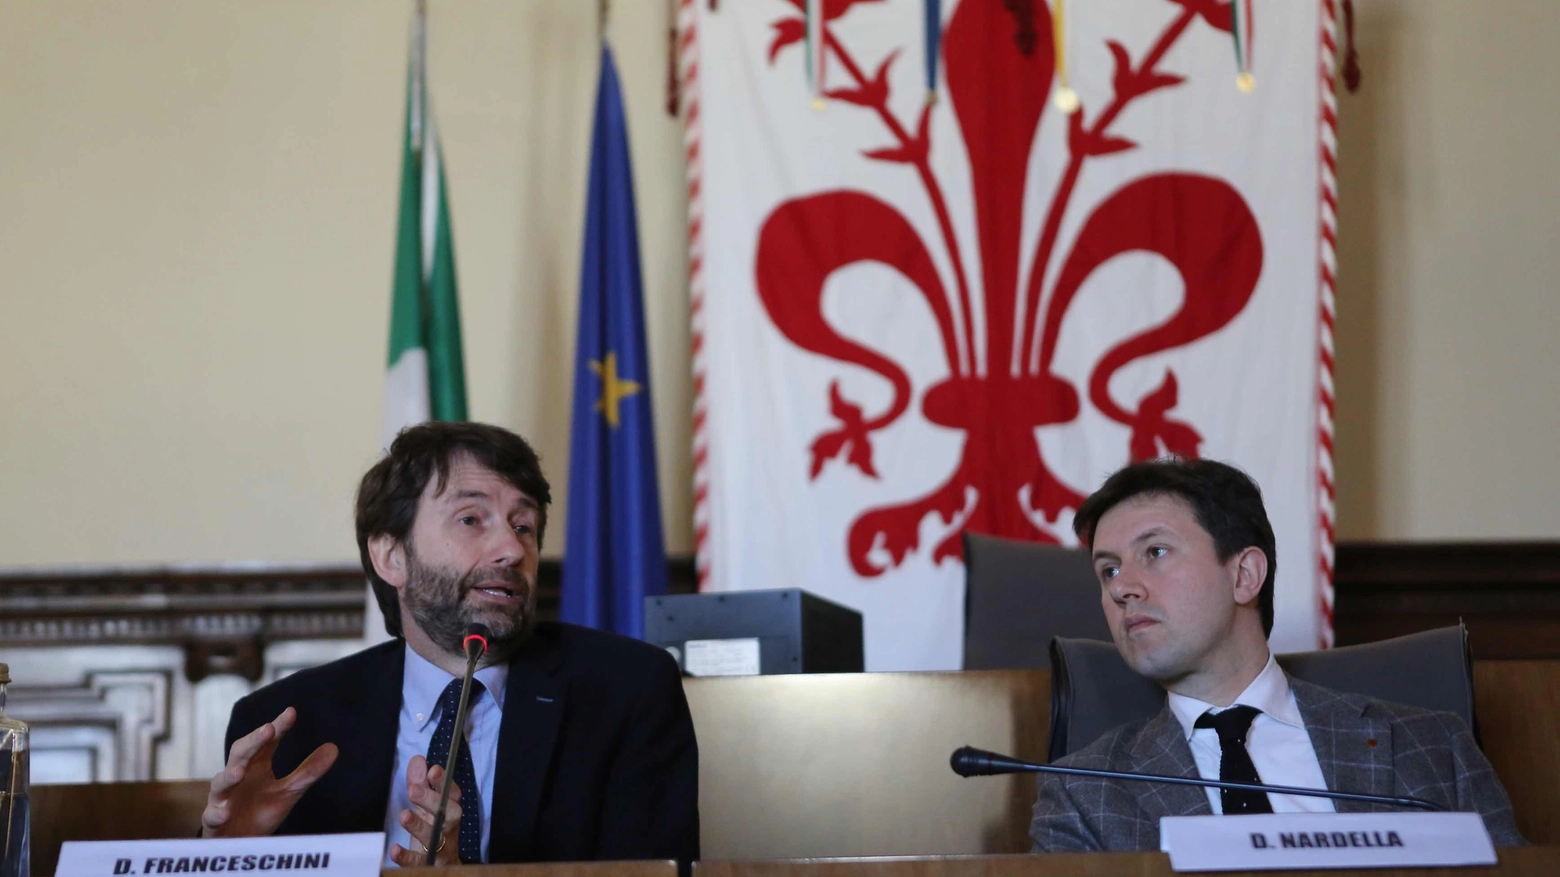 Dario Franceschini e Dario Nardella in Palazzo Vecchio (Marco Mori/New Press Photo)